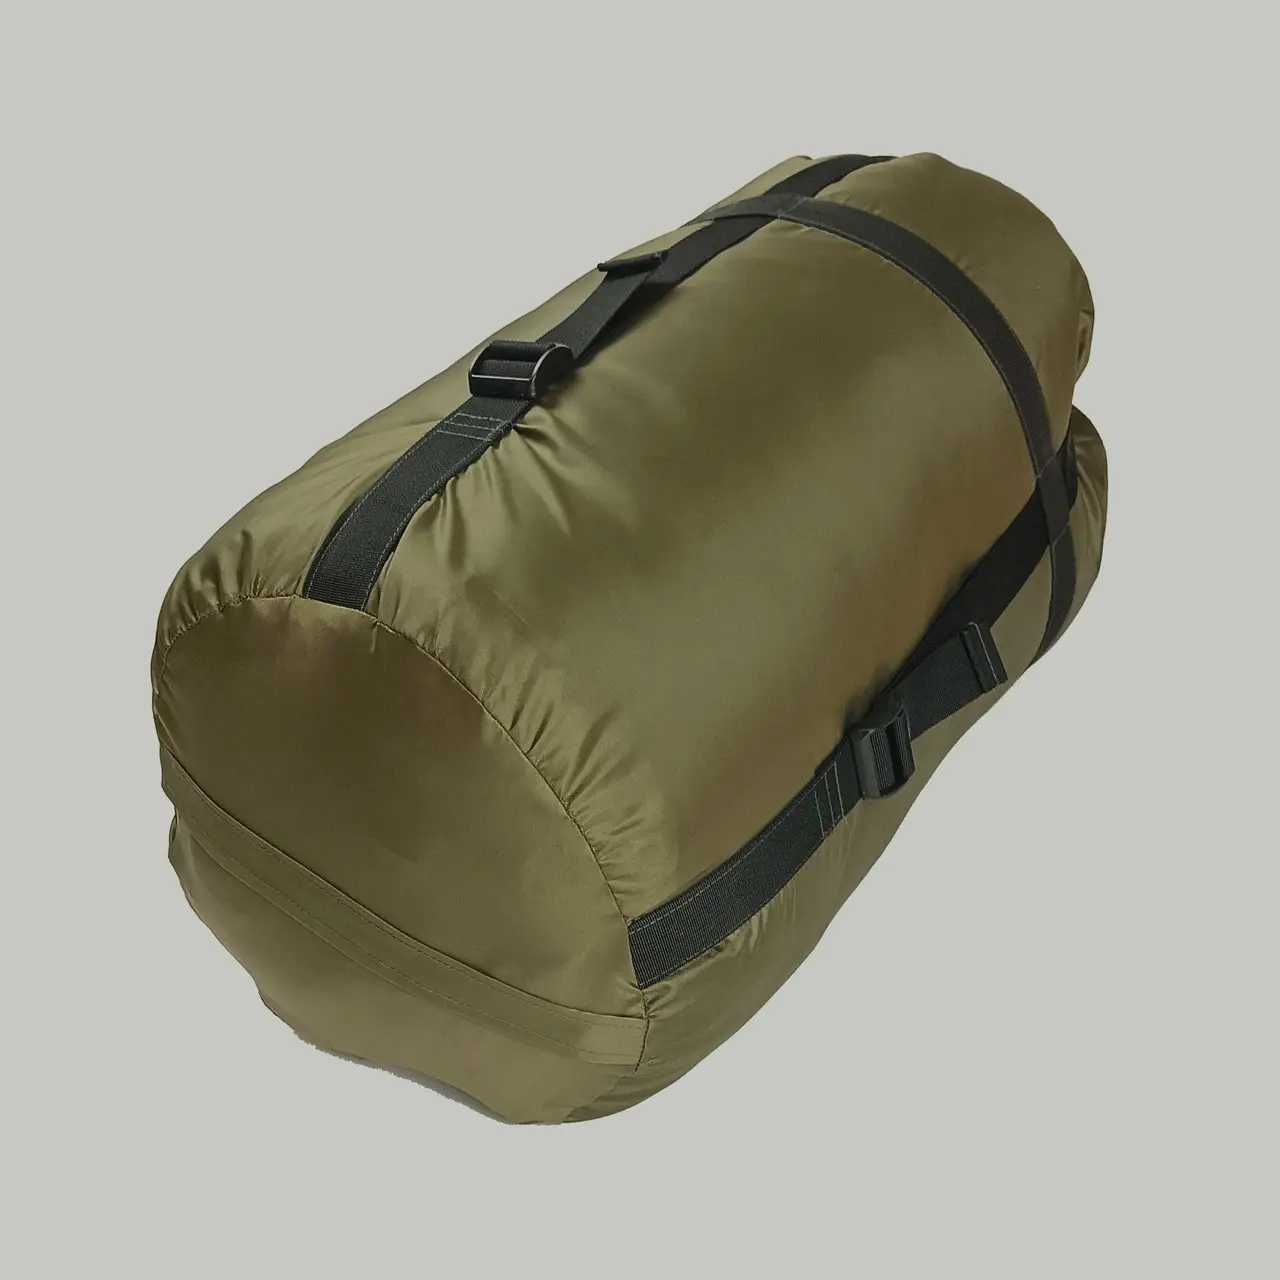 Зимний спальный мешок, спальник до -20, с компрессионной сумкой